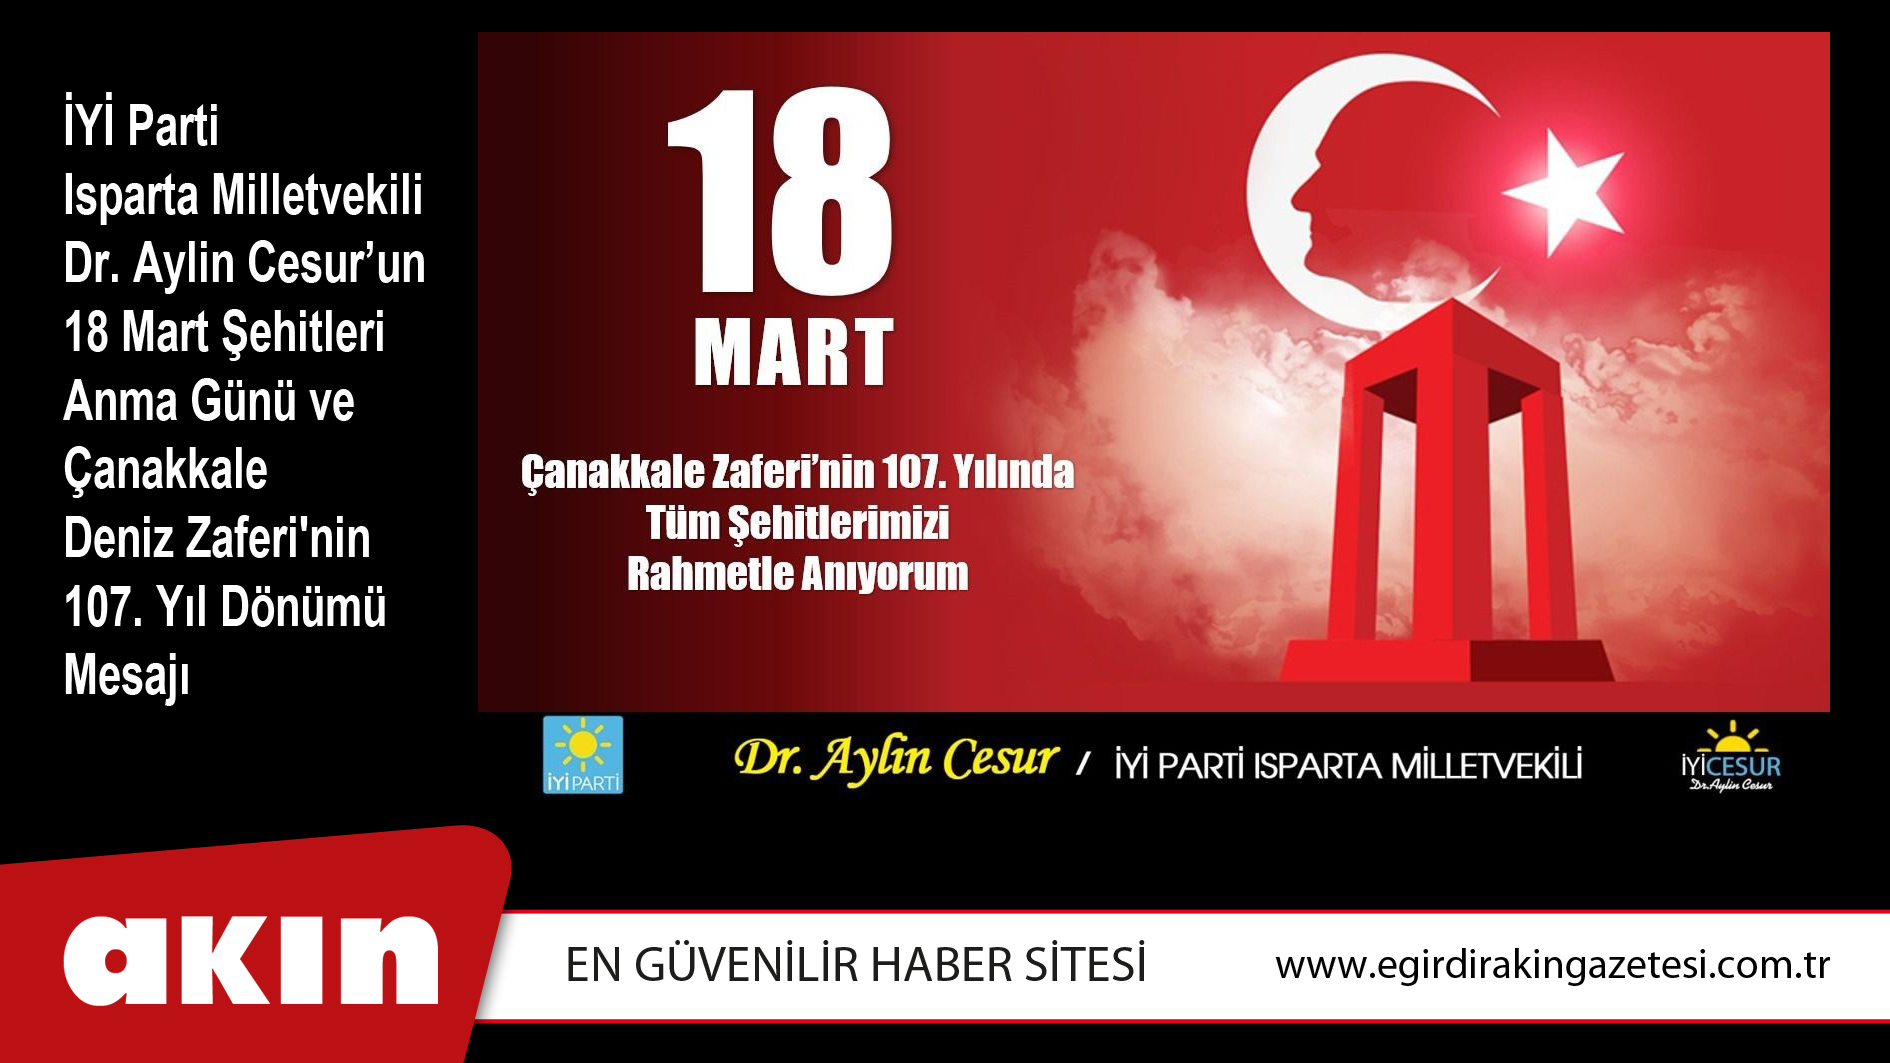 İYİ Parti Isparta Milletvekili Dr. Aylin Cesur’un 18 Mart Şehitleri Anma Günü ve Çanakkale Deniz Zaferi'nin 107. Yıl Dönümü Mesajı